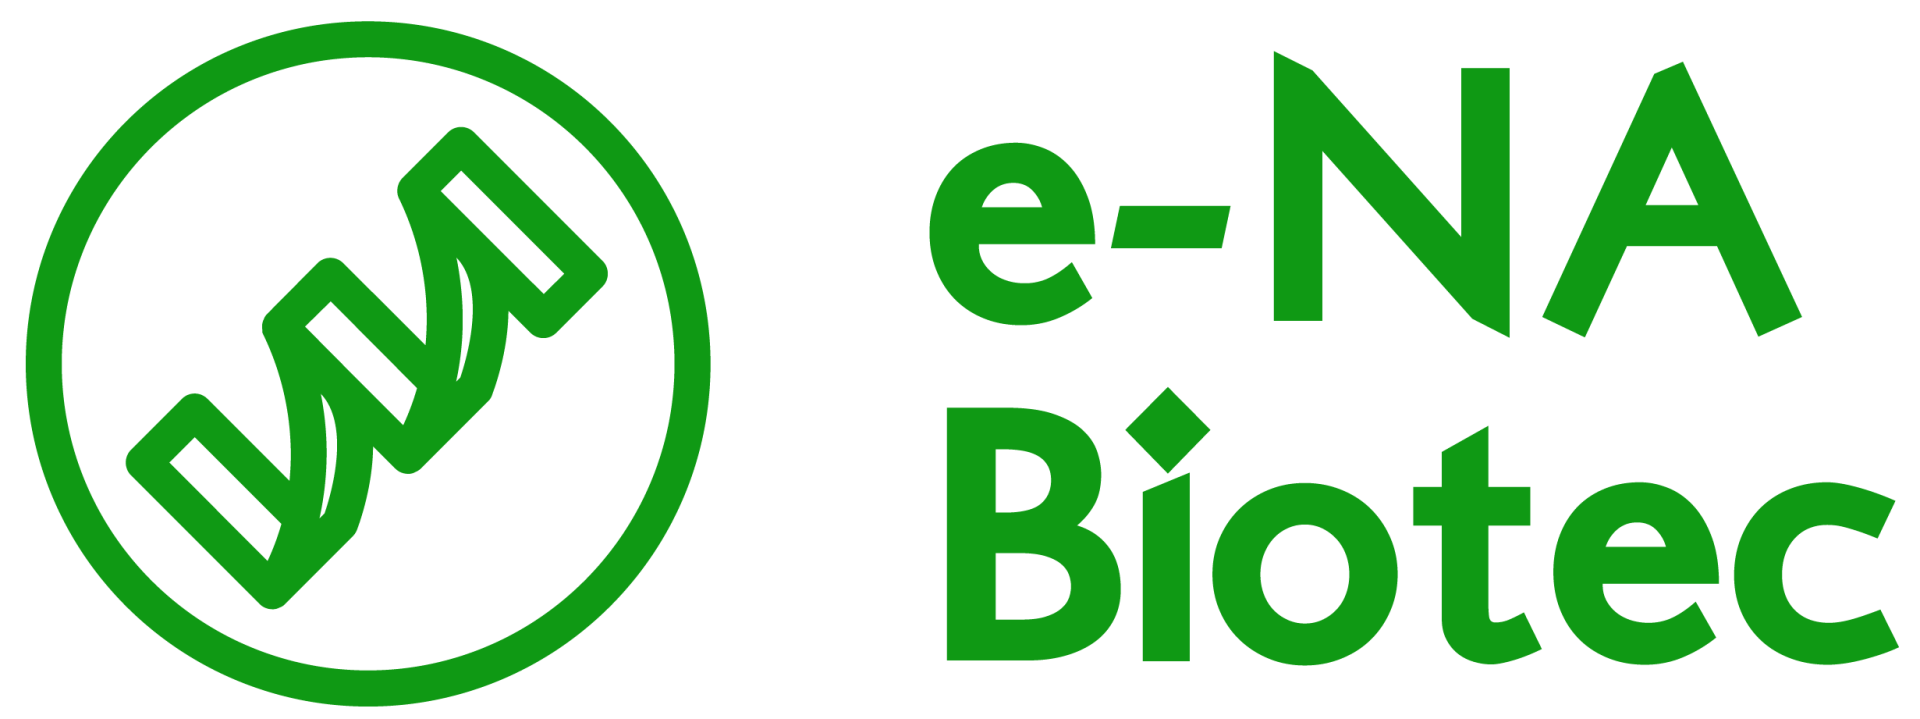 e-NA Biotec Inc.